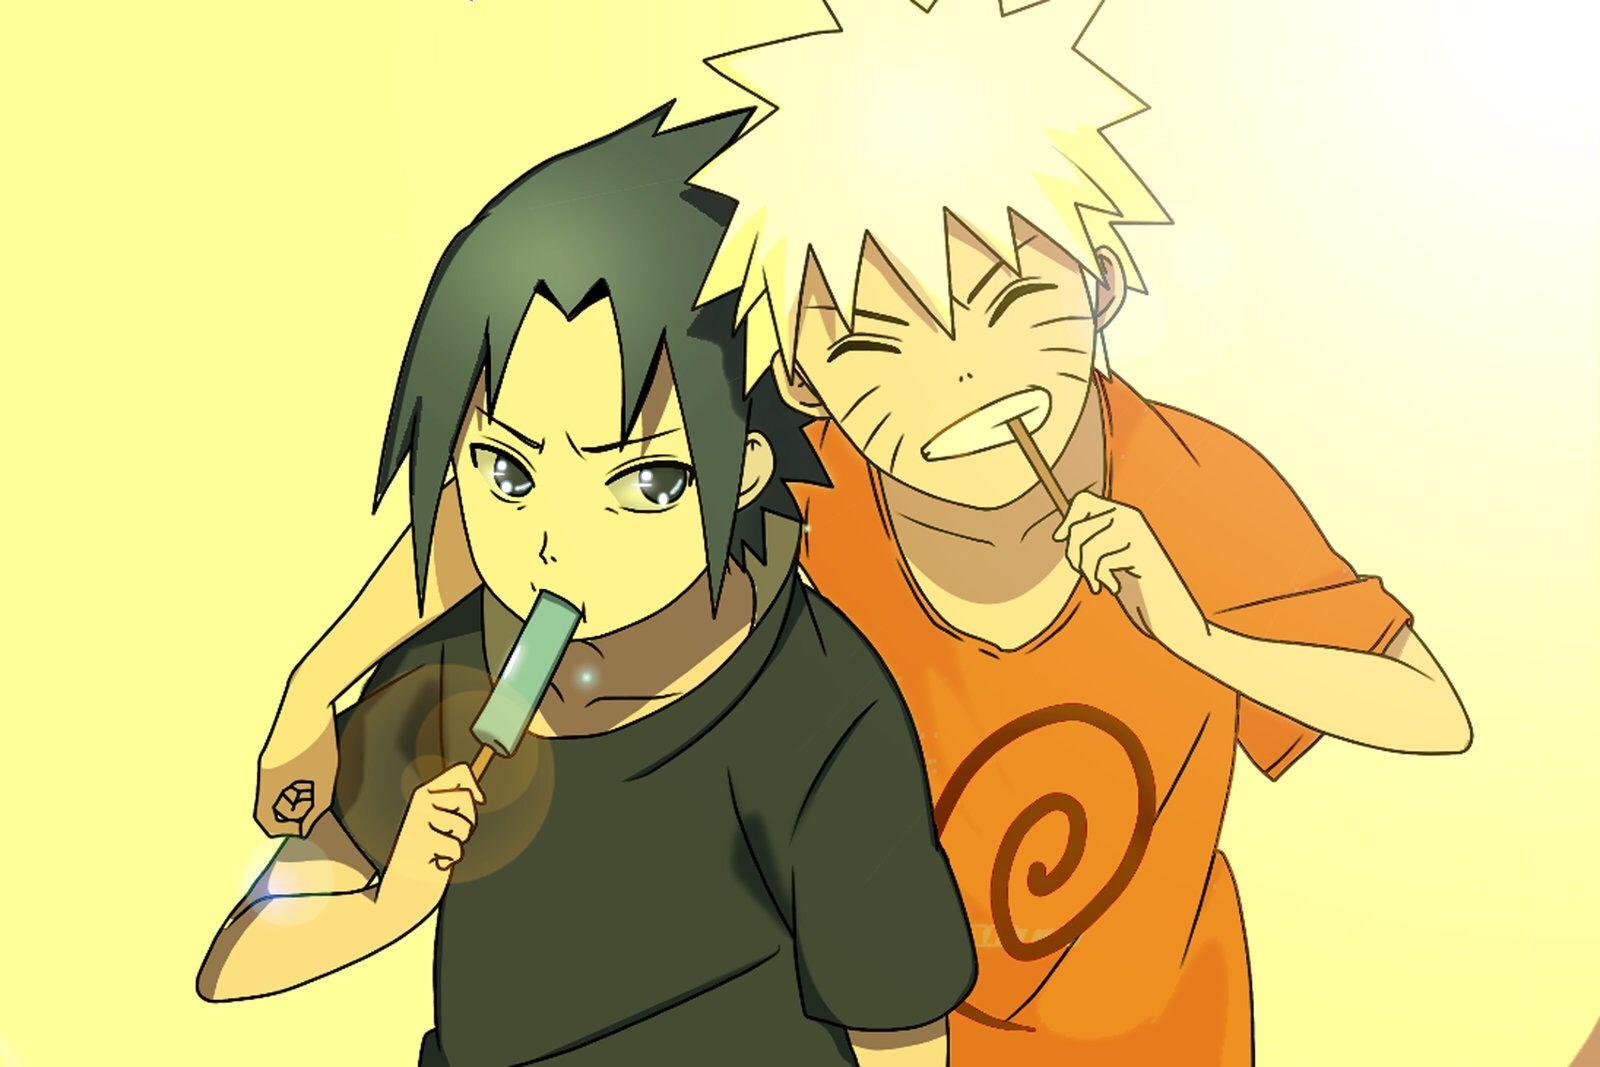 Little Sasuke and Naruto #naruto. Naruto. Naruto